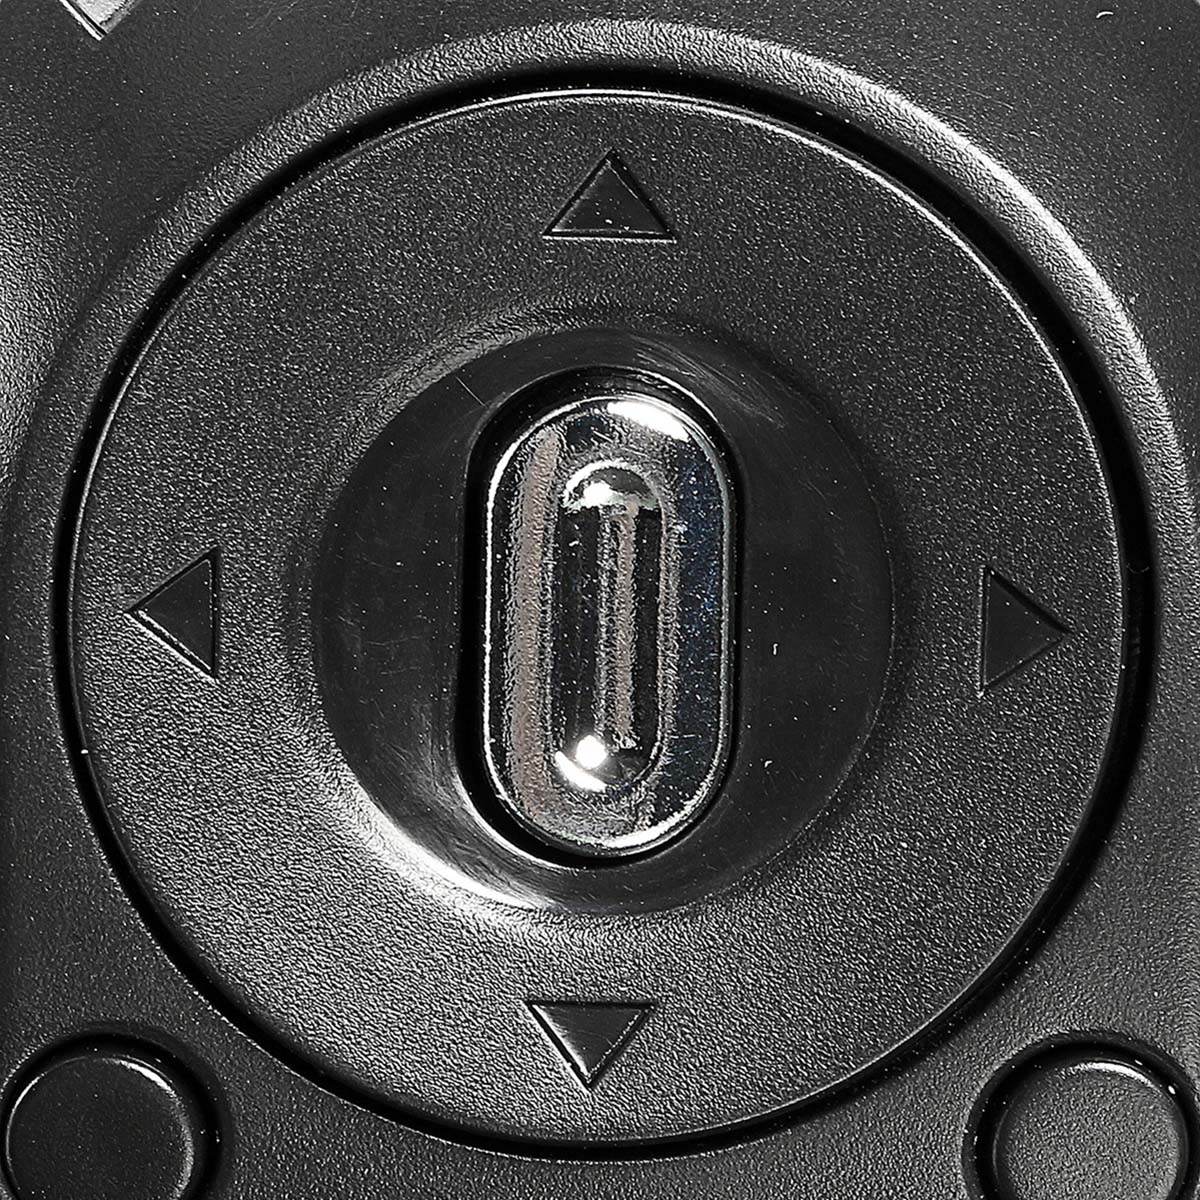 รูปภาพรายละเอียดของ ดิจิตอลกล้องวิดีโอ กล้องวีดีโอกล้องถ่ายรูป ระบบตัวเลขความละเอียดสูงกล้องถ่ายวิดีโอกล้อง DV 16X Video Camera 16 Million Pixels HD 1080P Digitale Video Camcorder DV 16MP 2.7'' LCD Screen Toccare Schermo 16X Zoom Camera